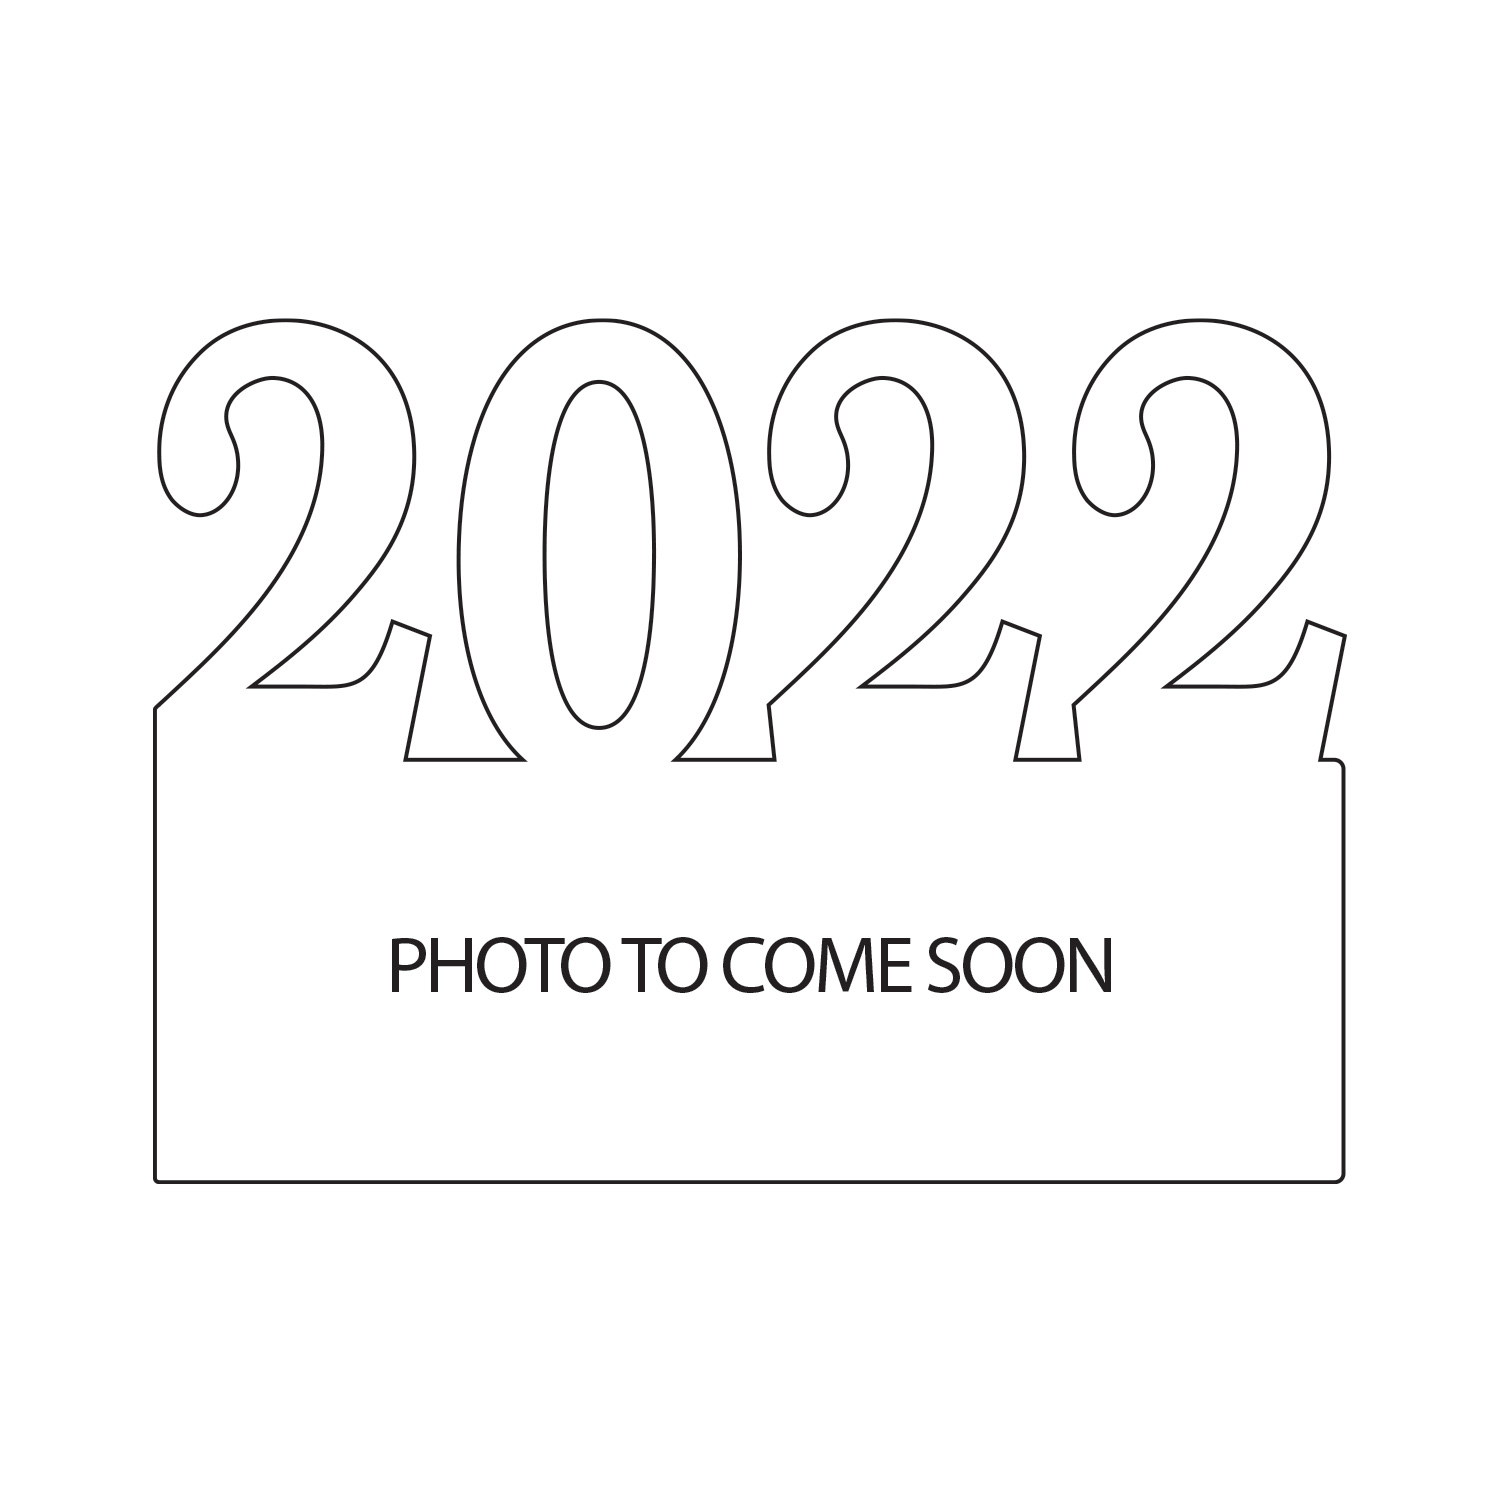 2022 Acrylic Award - 6 x 8.25 inch